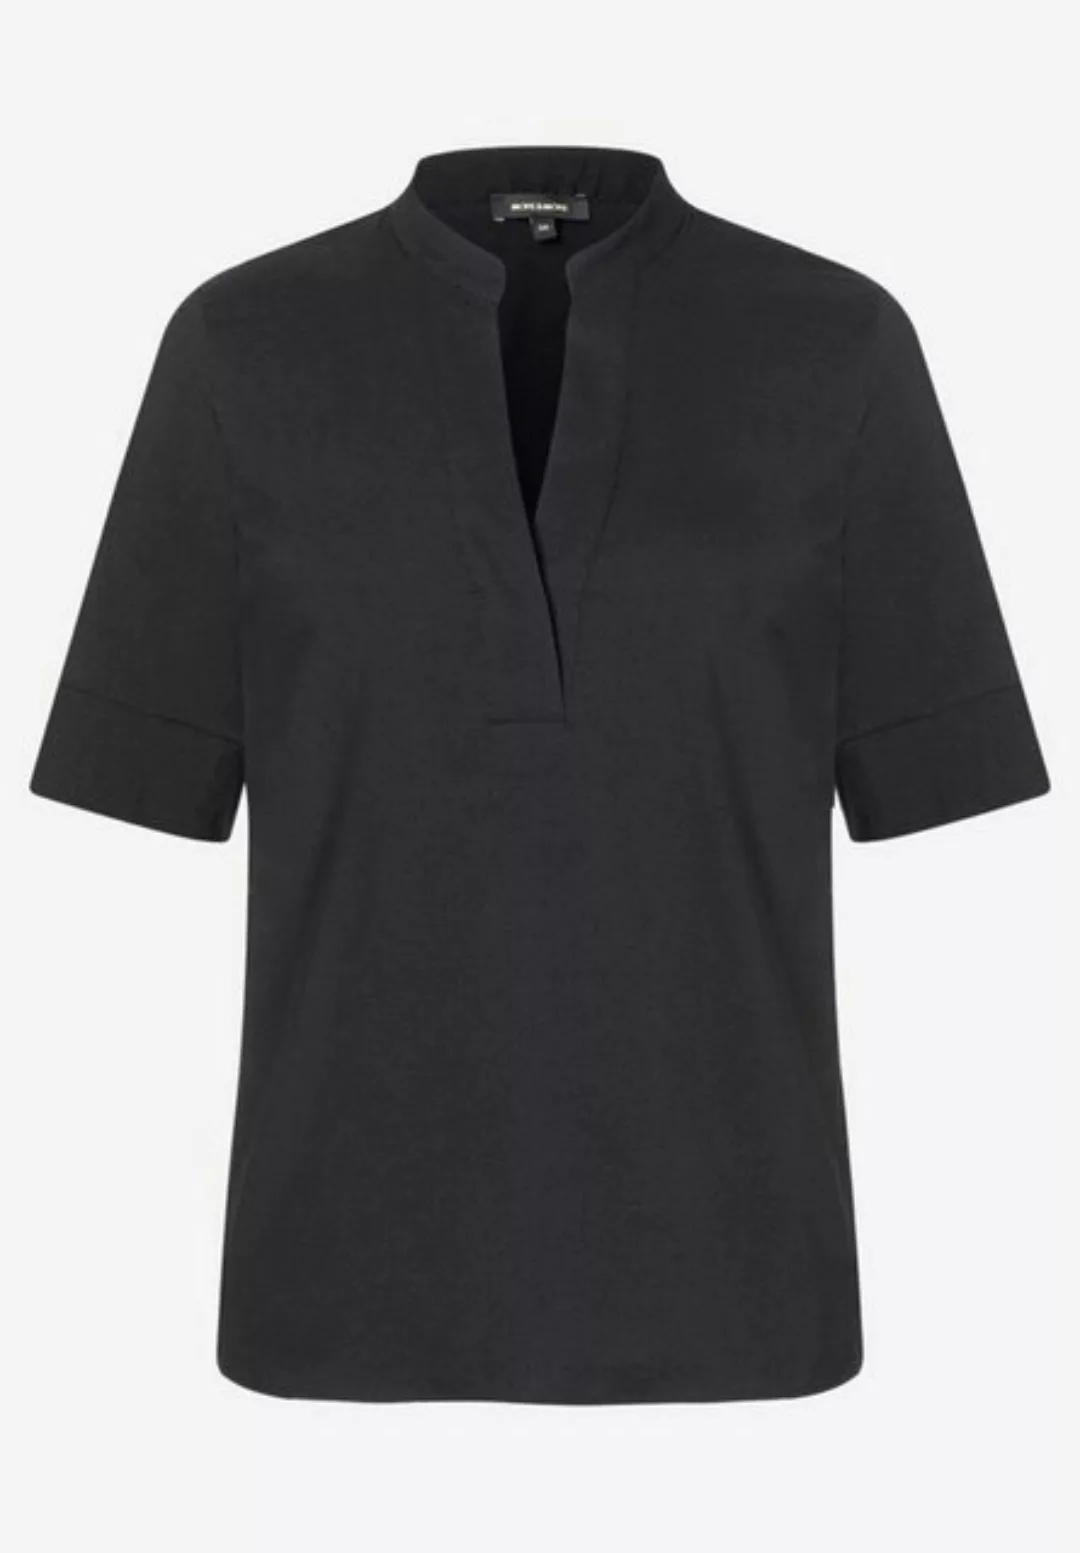 Baumwoll/Stretch Bluse mit Stehkragen, schwarz, Frühjahrs-Kollektion günstig online kaufen